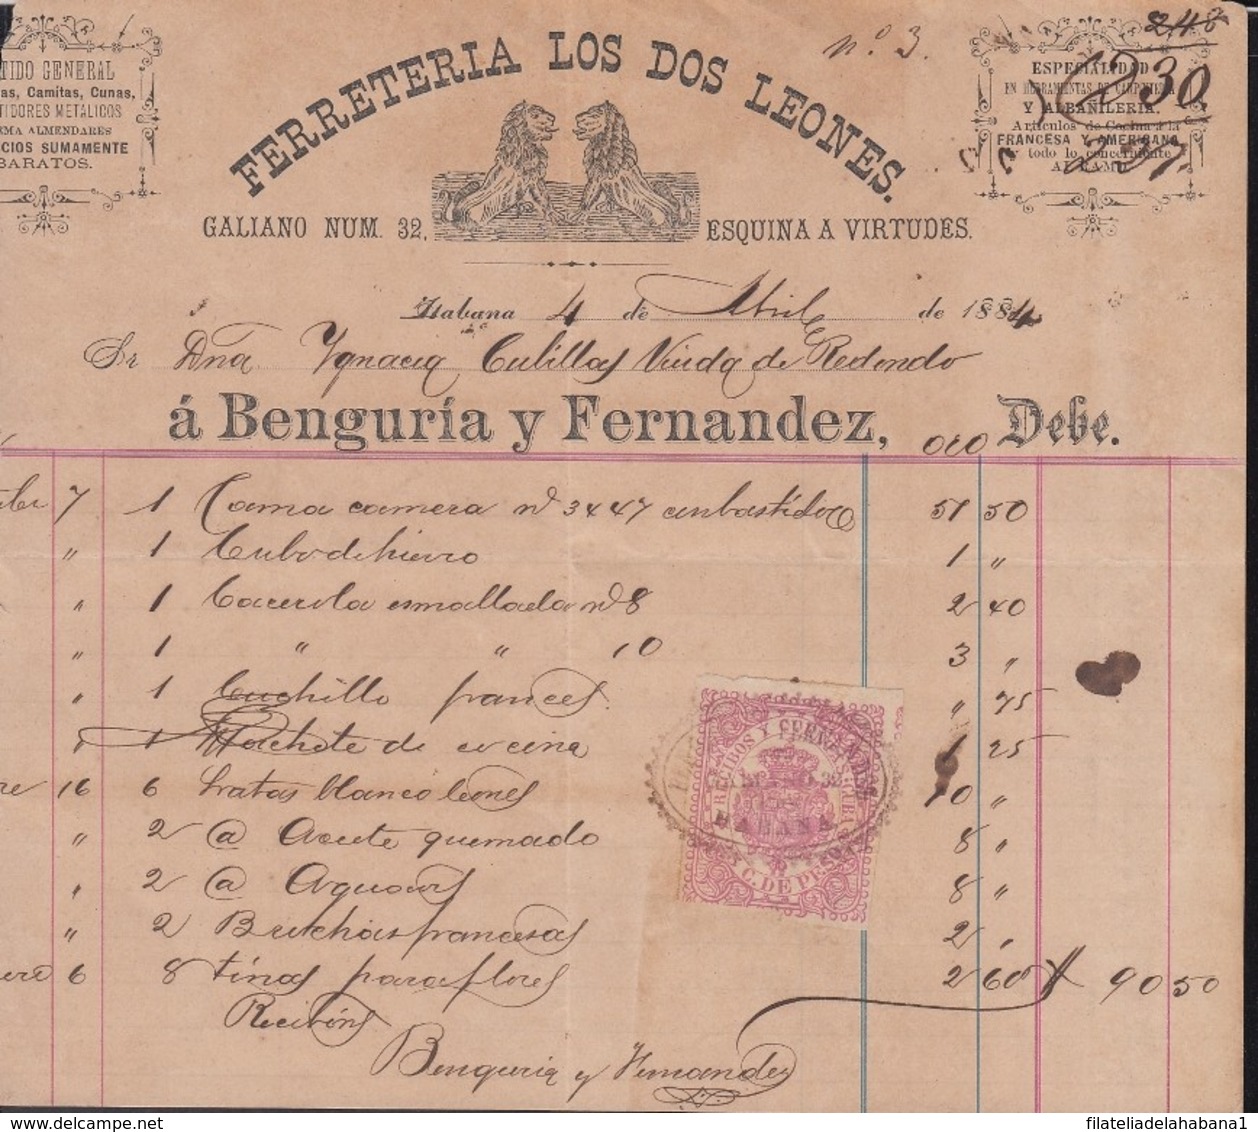 REC-133 CUBA SPAIN ESPAÑA (LG1641) RECIBOS REVENUE 1884. FERRETERIA LOS DOS LEONES HARDWARE INVOICE. - Impuestos